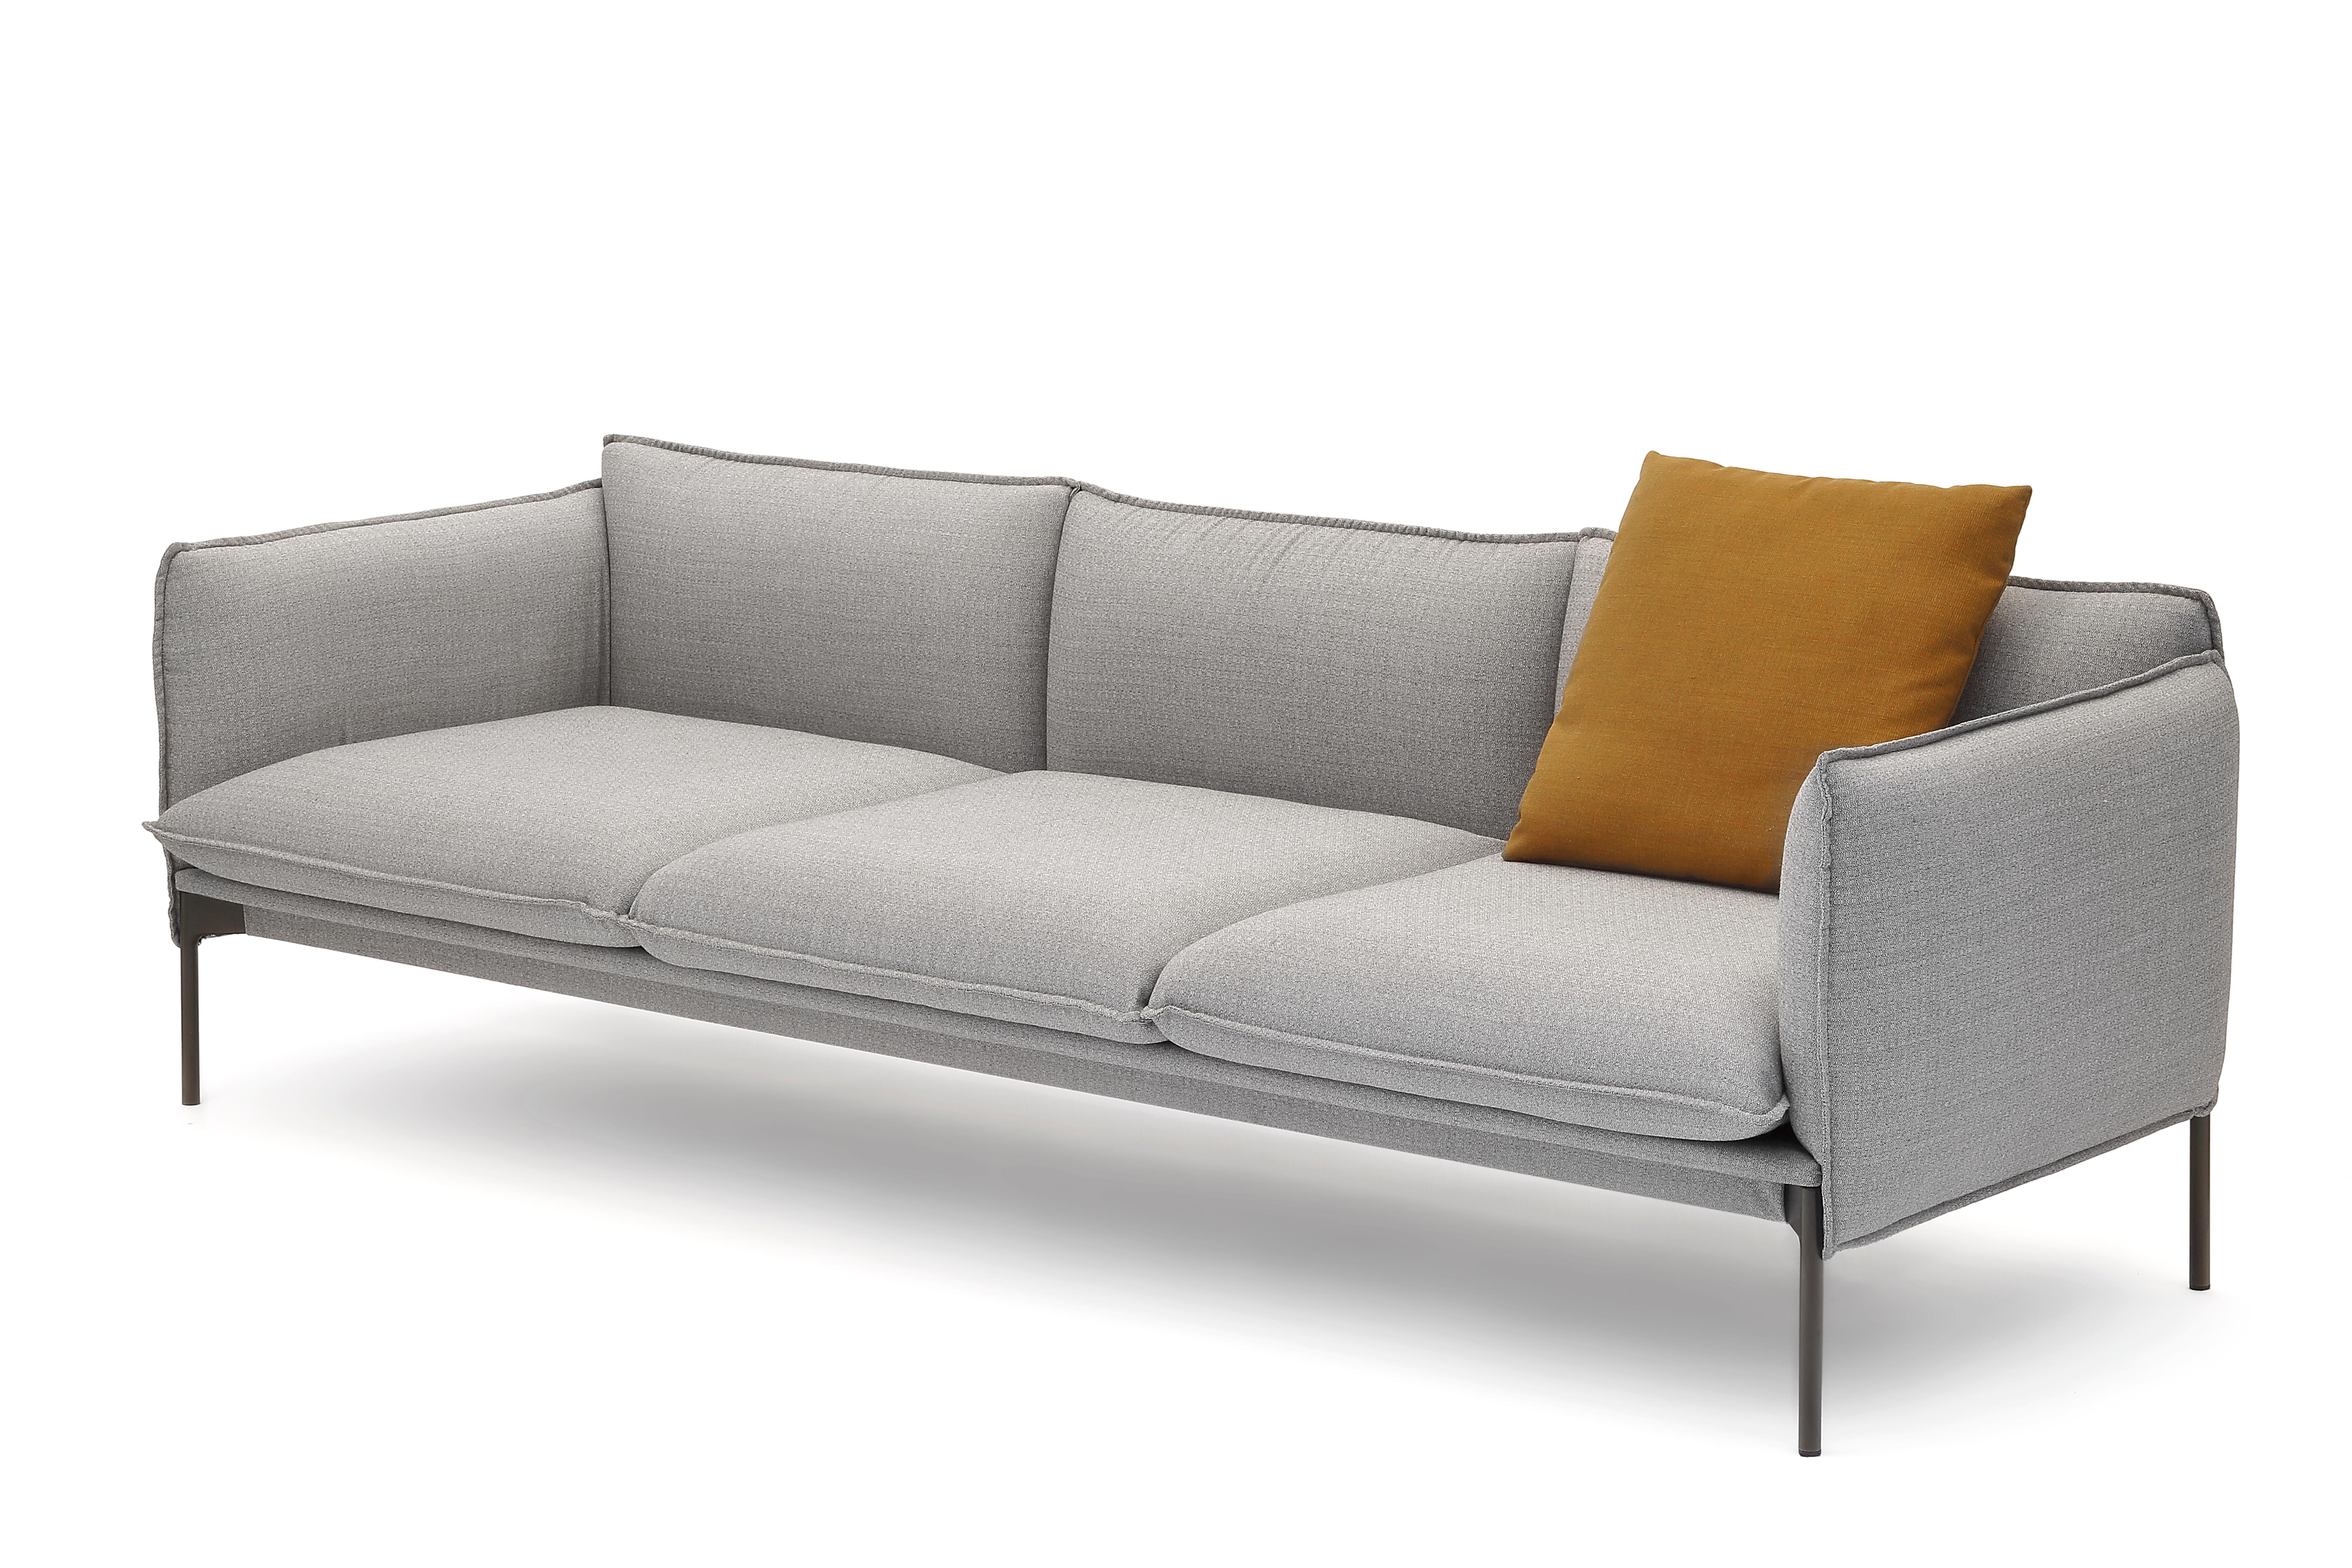 Palmspring Sofa von Anderssen & Voll
2020
MATERIALIEN: Struktur aus bronzefarben lackiertem Metall, Sitz und Rückenlehne aus Polyurethanschaum, gepolstert
stofflich
Abmessungen: 230 x 83 x 69 cm
 Sitzfläche: 40 cm

3-Sitzer-Sofa aus